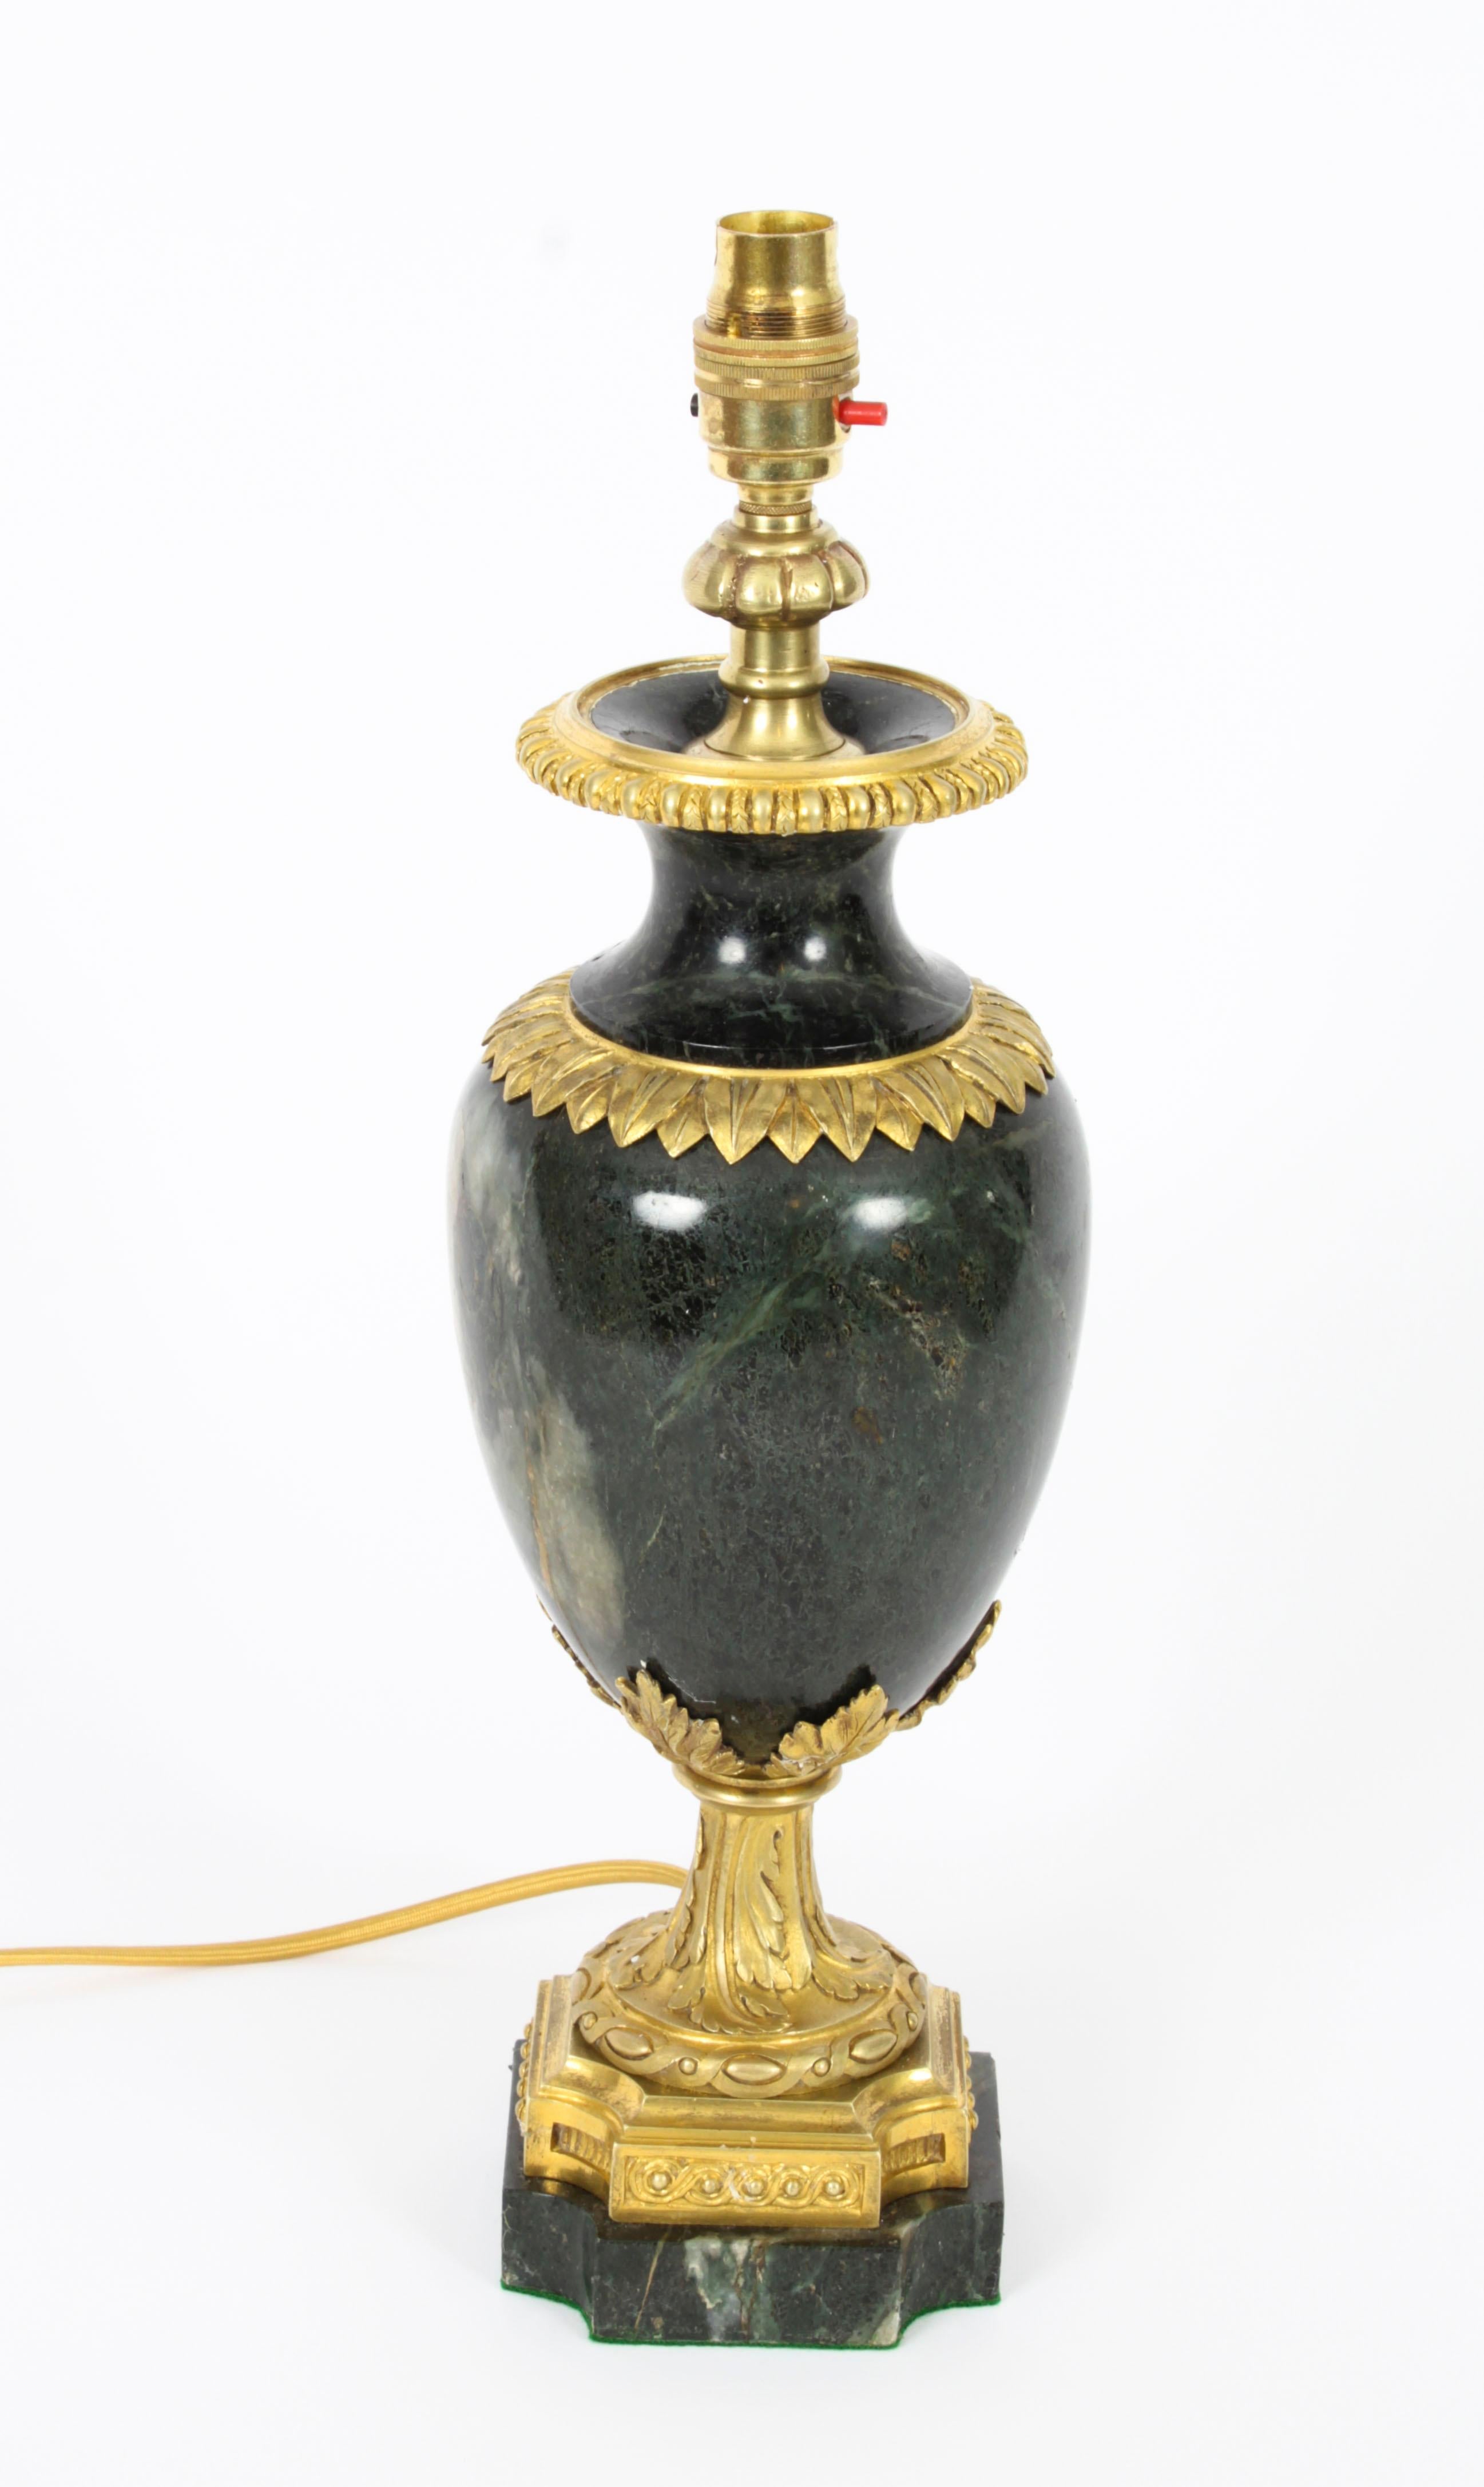 Une belle lampe de table italienne montée en bronze doré et marbre serpentin, datant de C1880.

Cette belle lampe de table en bronze doré est décorée de superbes feuilles d'acanthe en bronze doré et d'une décoration rococo. Elle est de forme